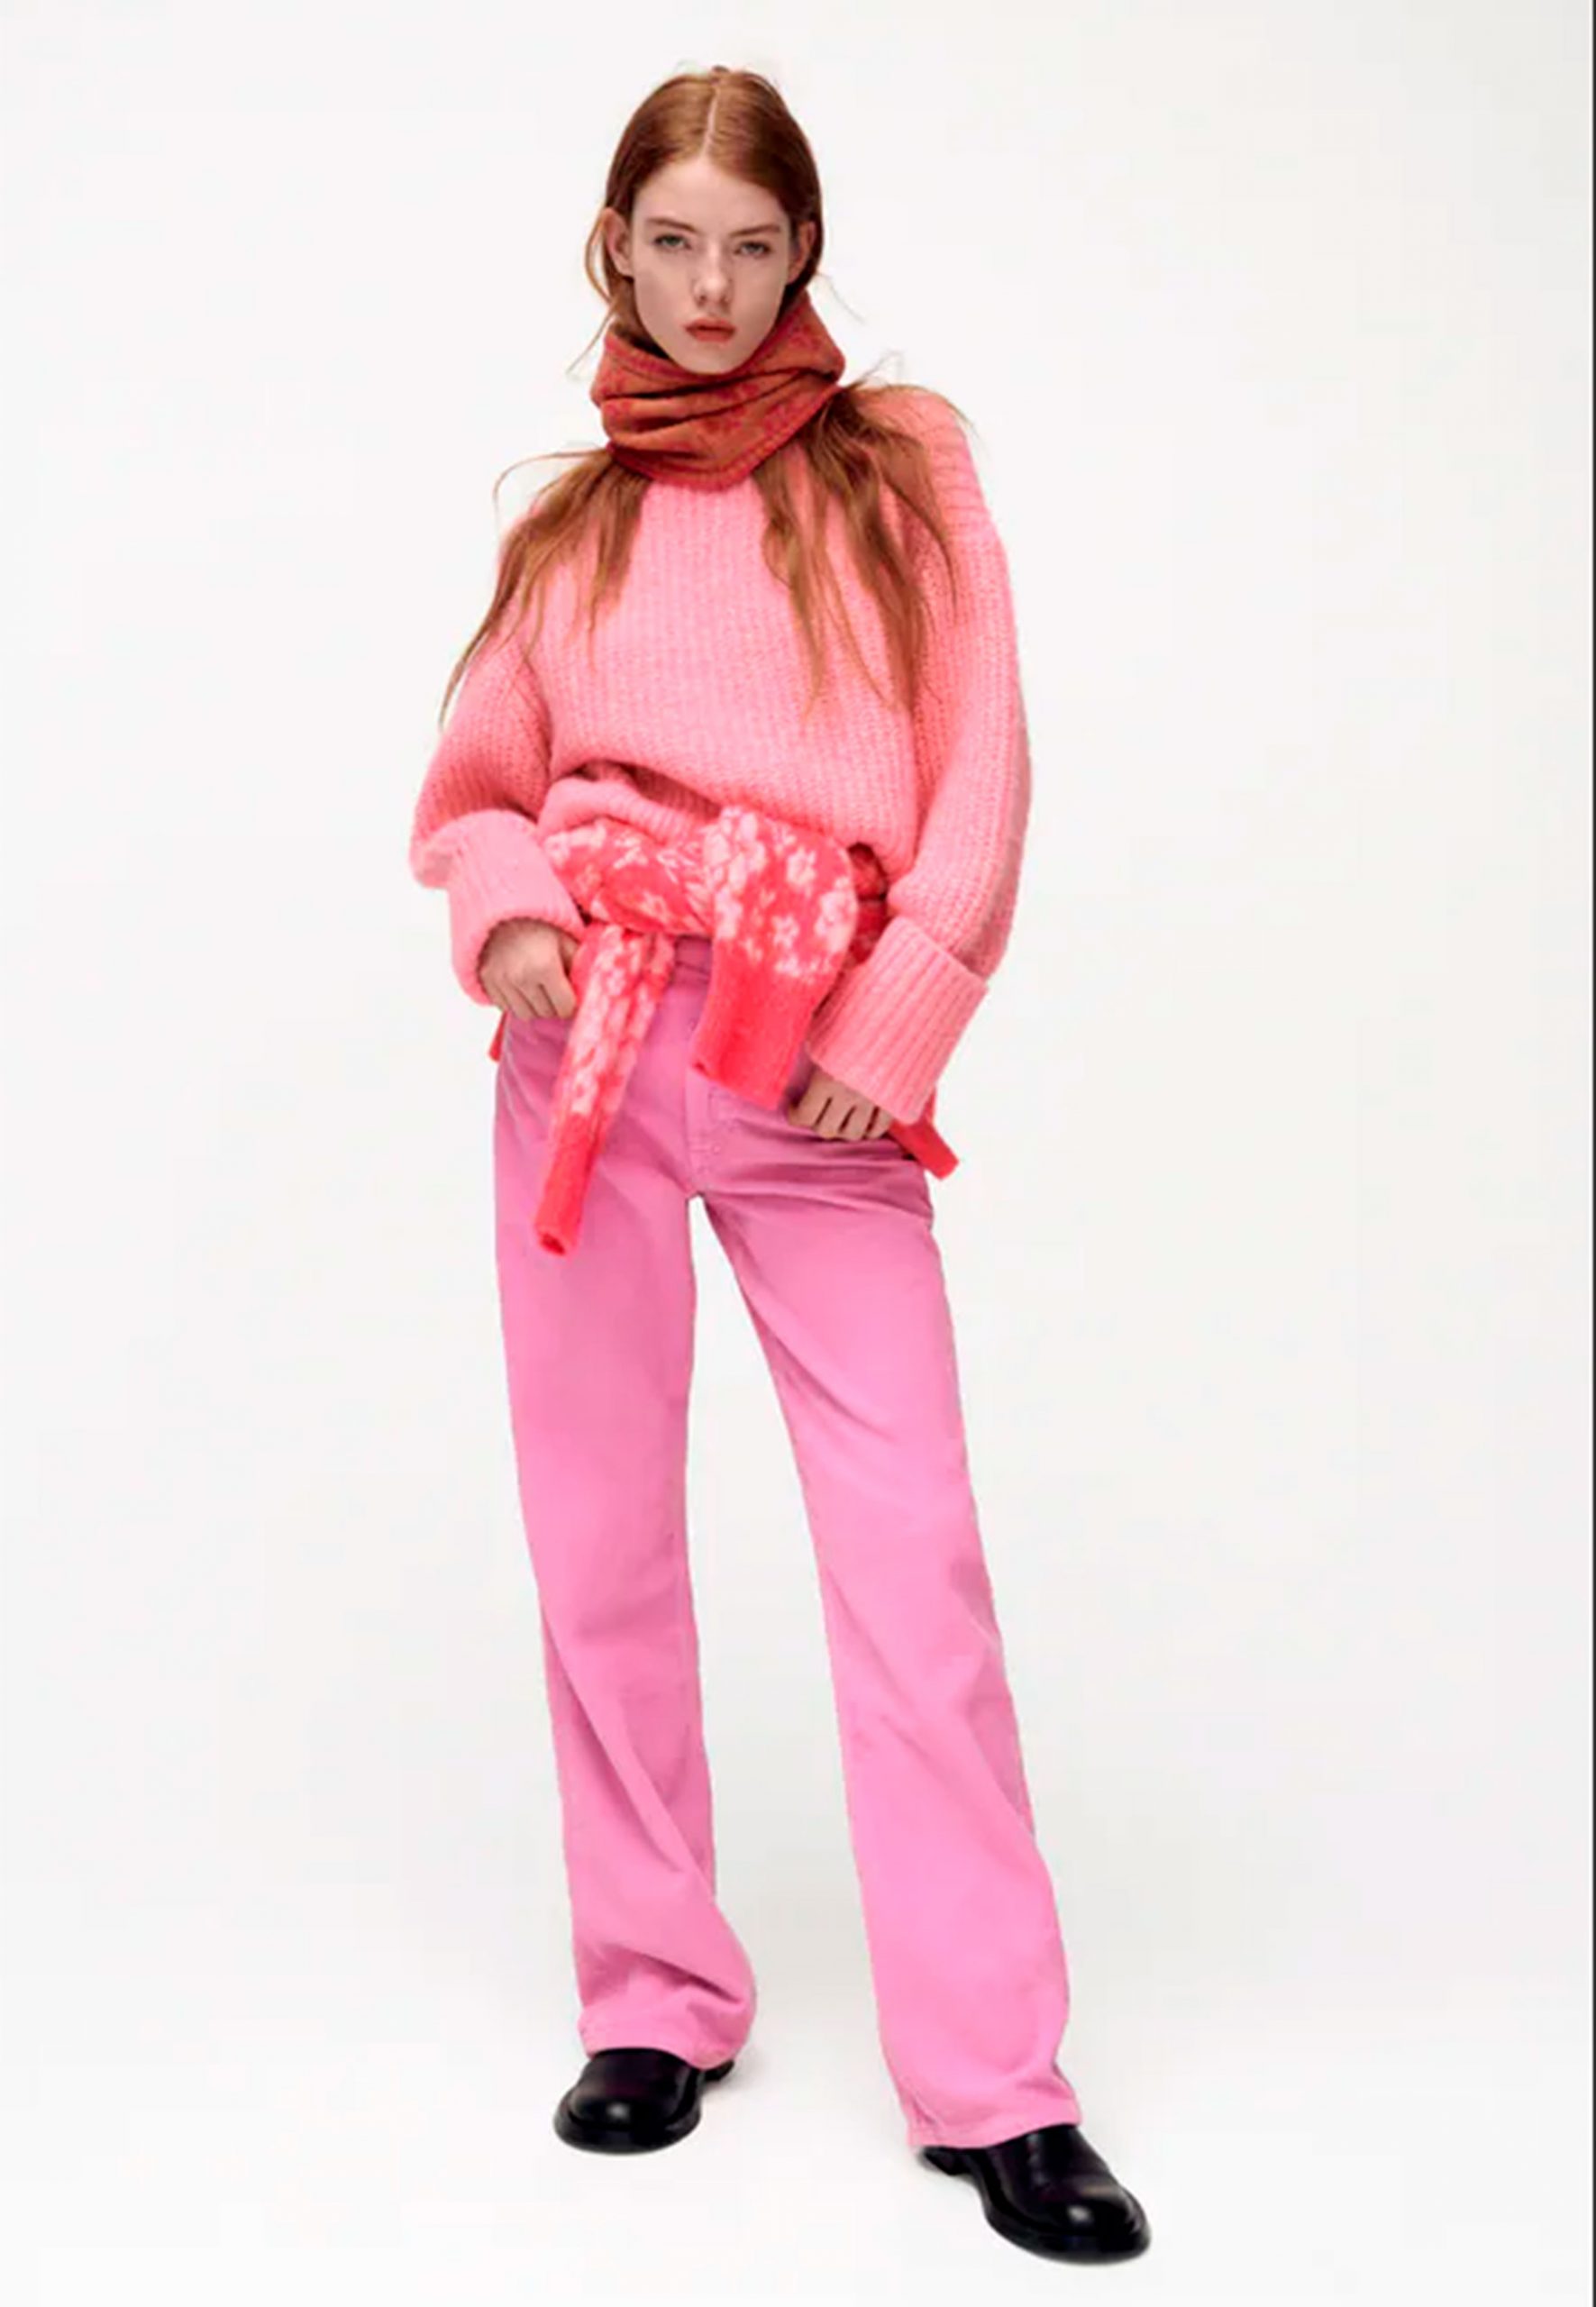 Pantalón rosa de Zara / Zara